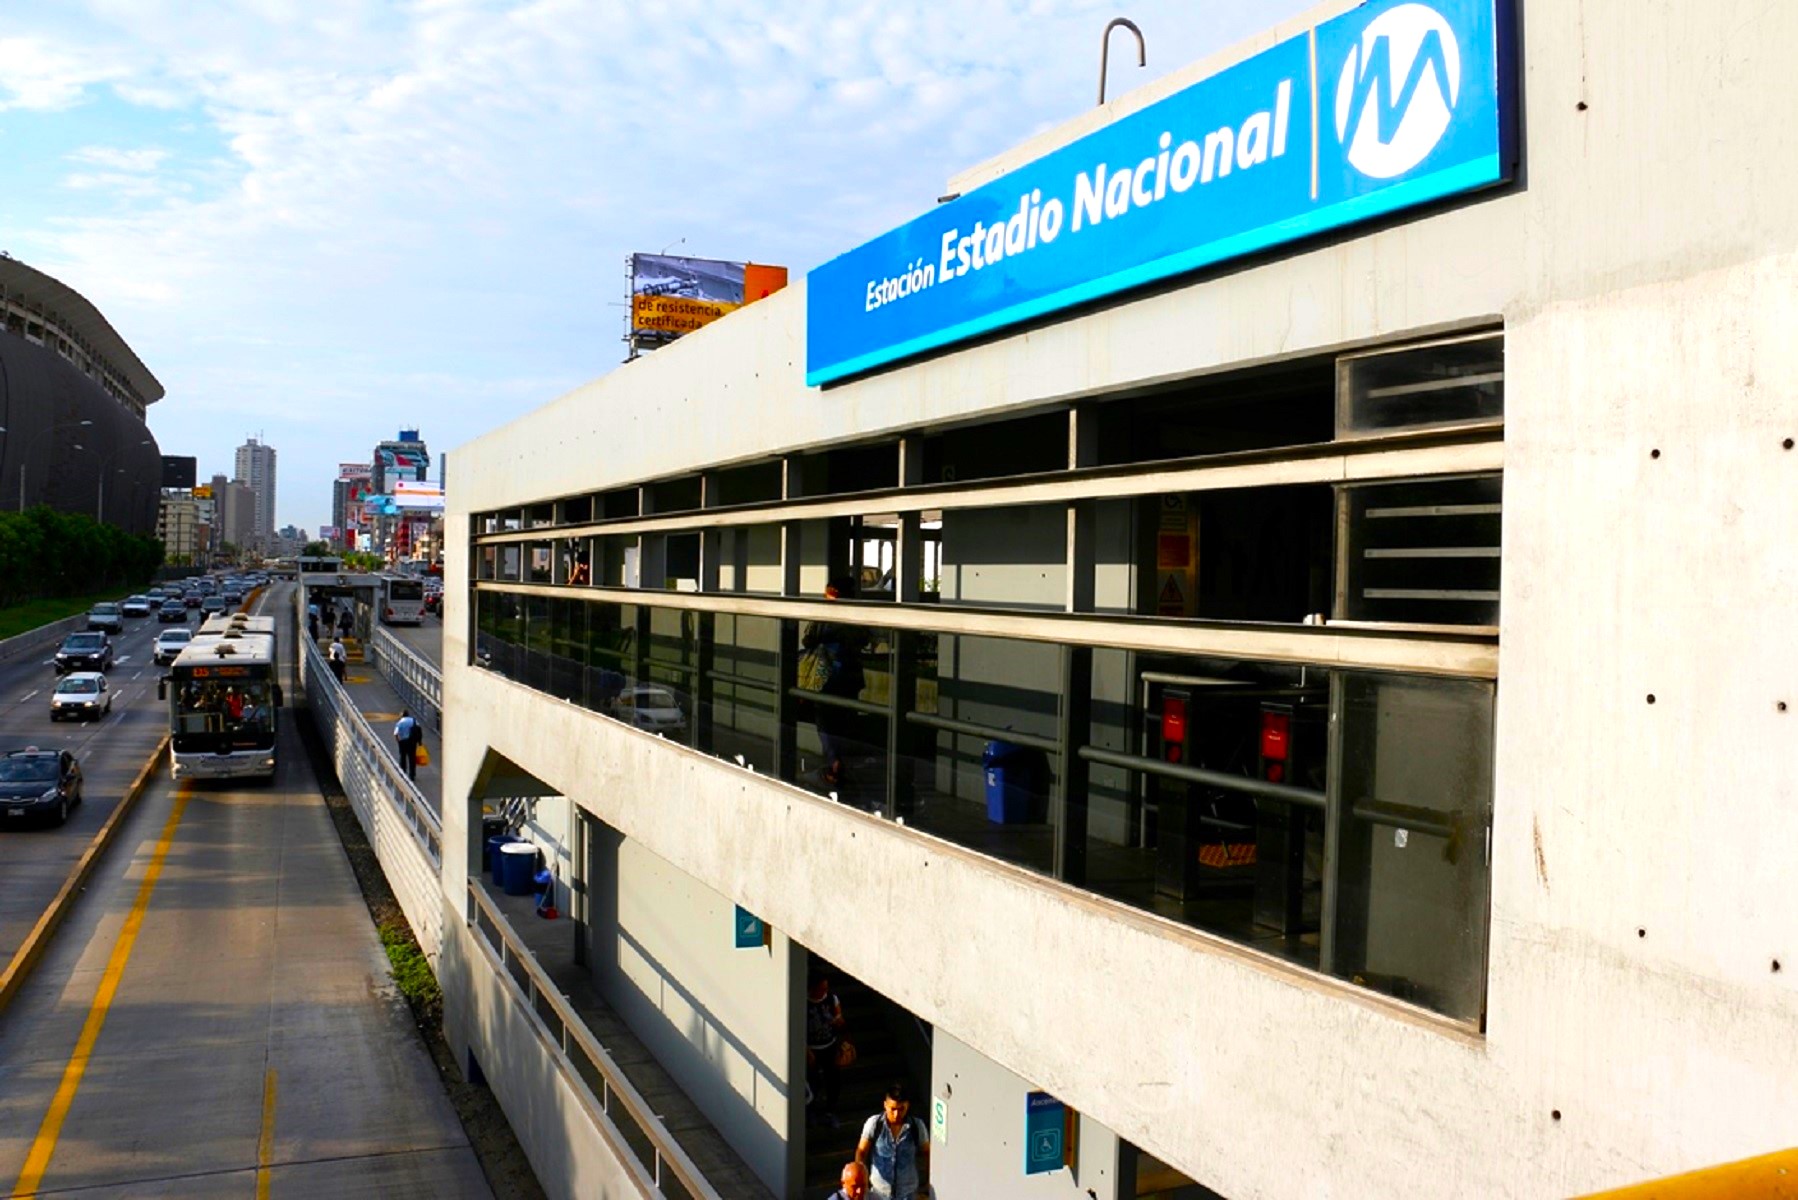 ATU apertura el servicio “La bicolor”, del Metropolitano (estación Estadio Nacional) y también del lechucero del corredor azul desde las 9 p.m.